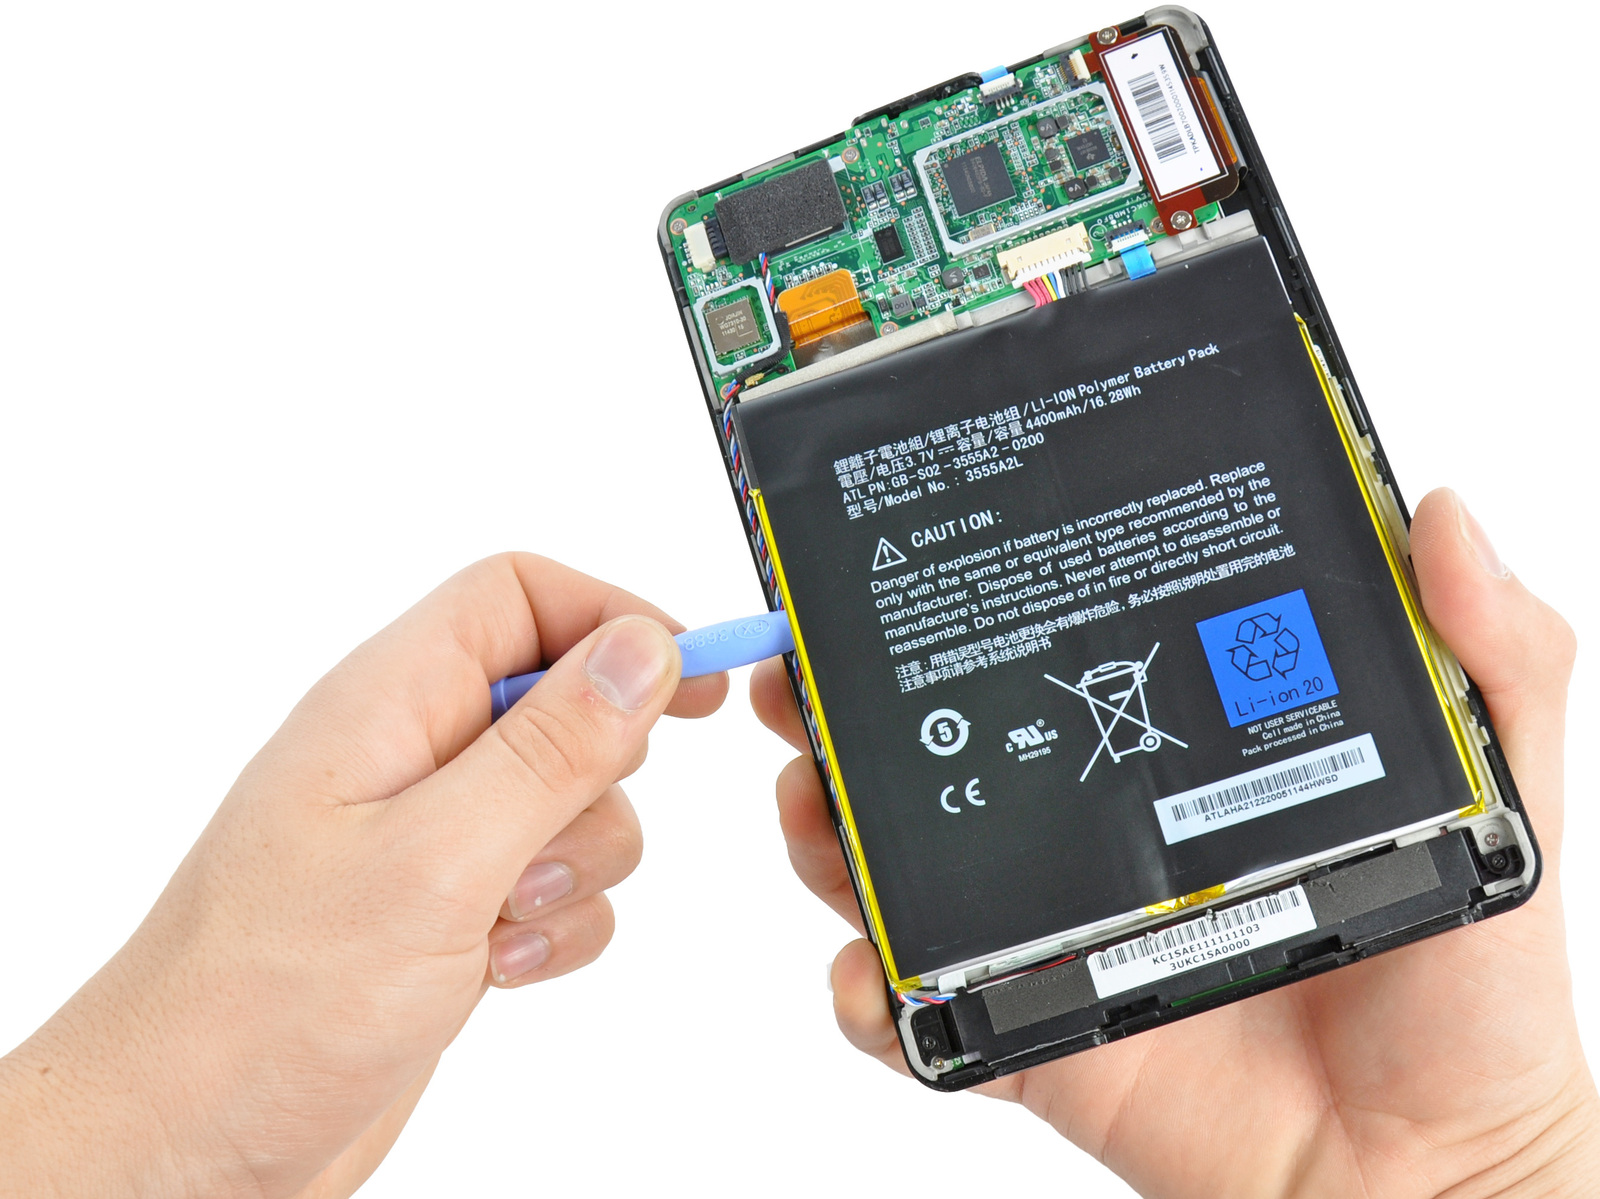 Paso 3 Batería Montar la punta de la herramienta de abertura de plástico entre la célula de la batería y el marco derecho de la Kindle Fire.